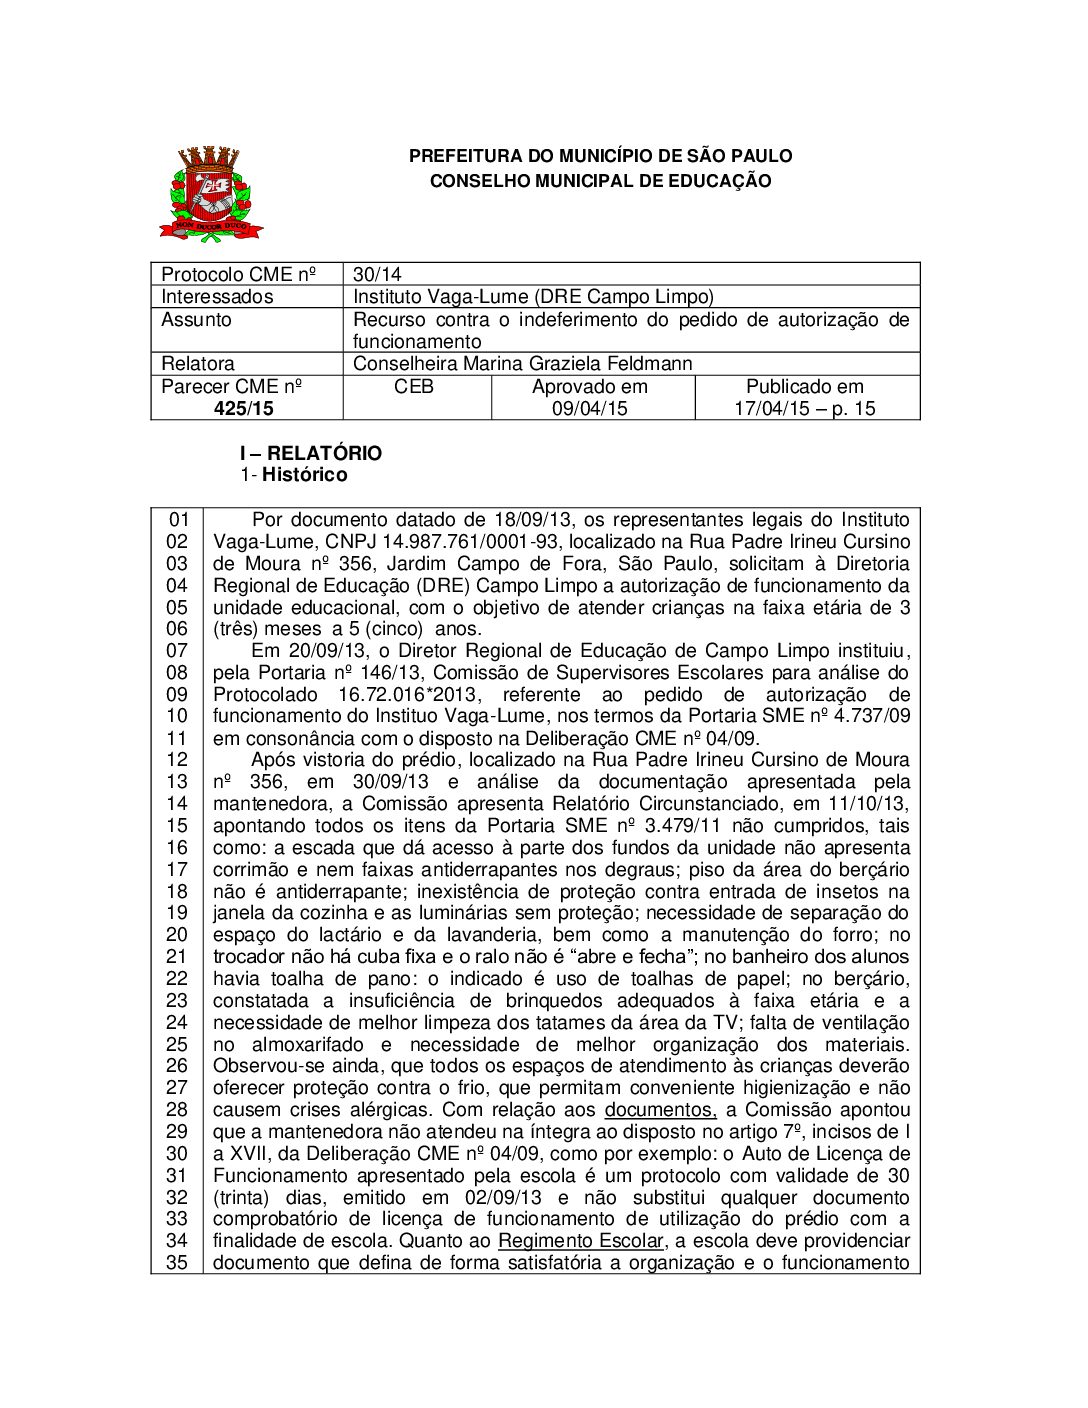 Parecer CME nº 425/2015 - Instituto Vaga-Lume (DRE Campo Limpo) - Recurso contra o indeferimento do pedido de autorização de funcionamento